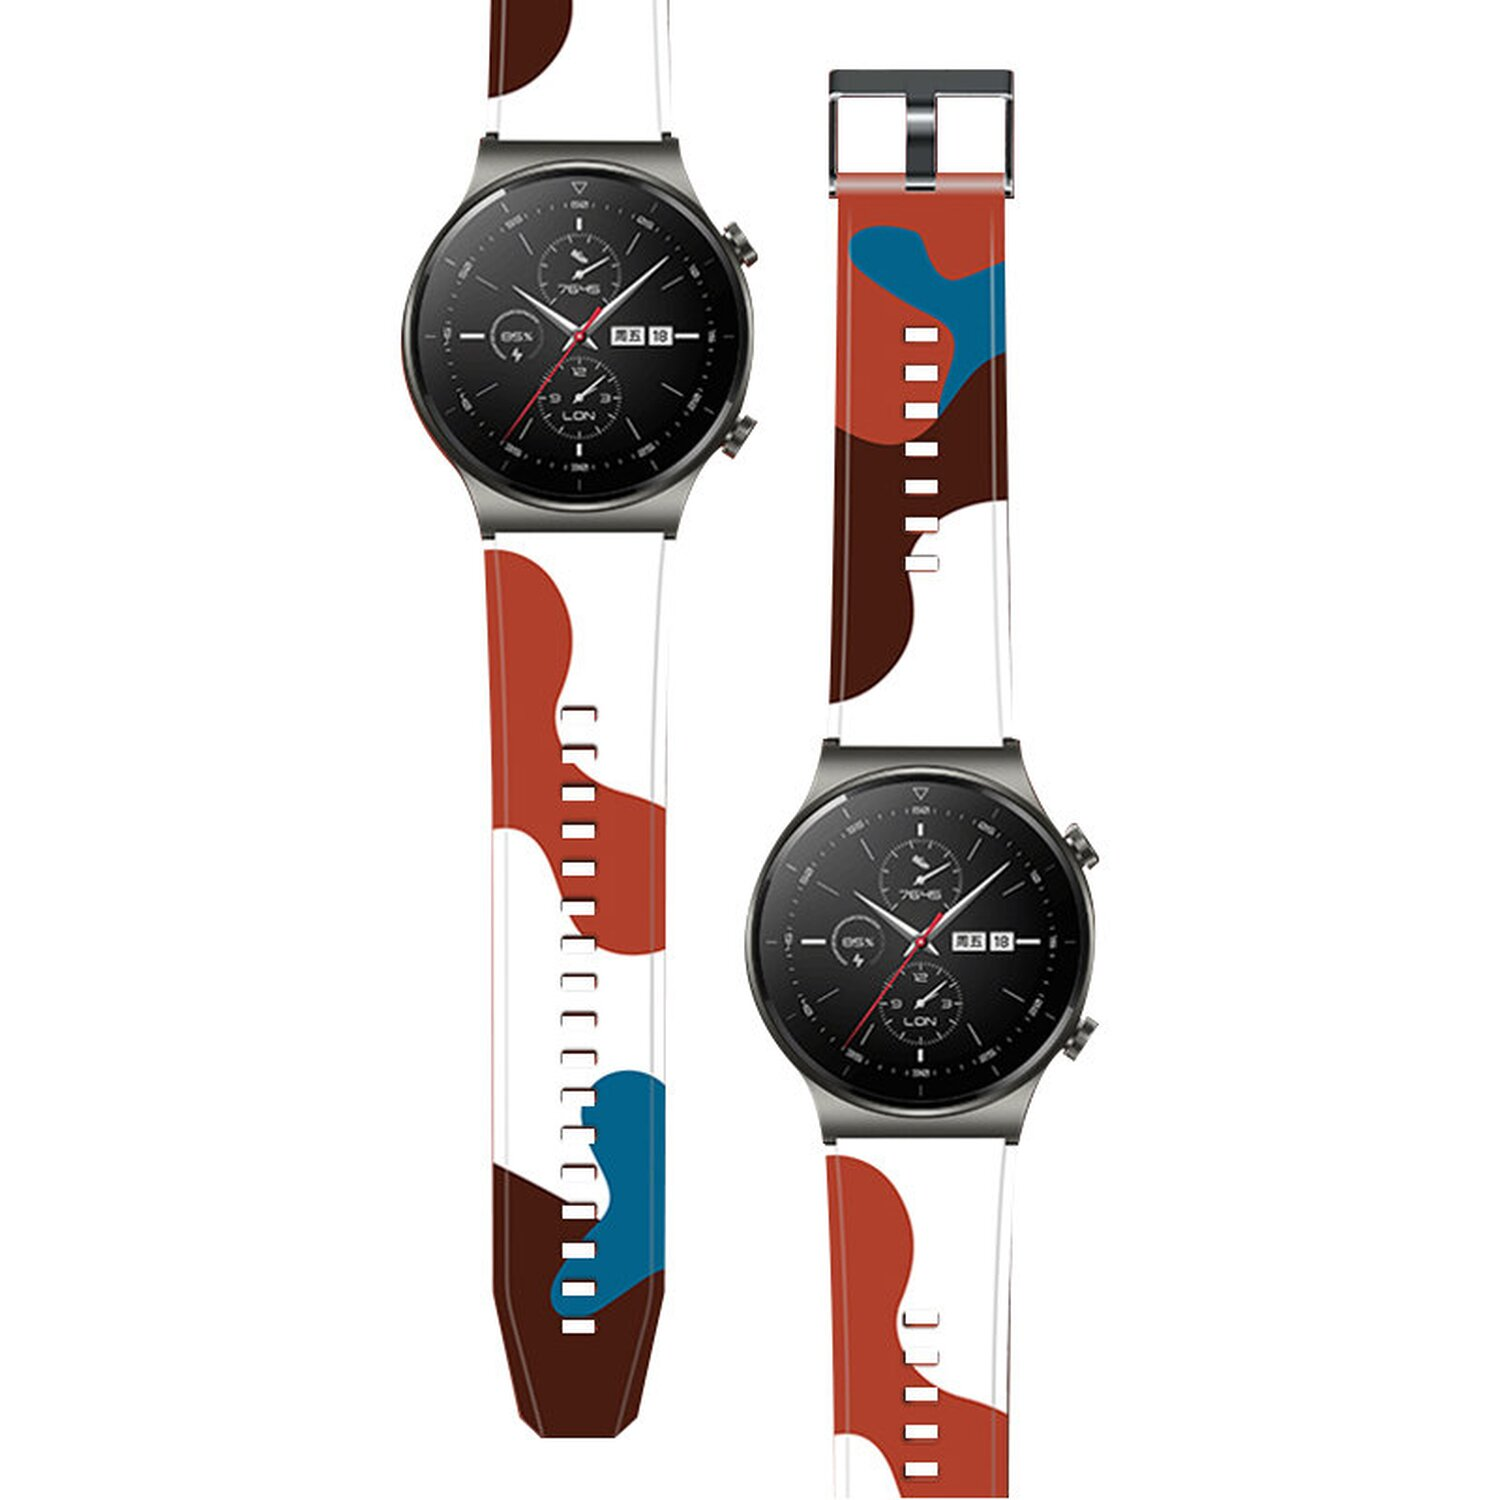 Motiv Pro Ersatzarmband Pro, COFI Armband kompatibel 9 9, Watch mit Moro Motiv Huawei Smartband, GT2 Strap Armband GT2 Watch Huawei, Camo